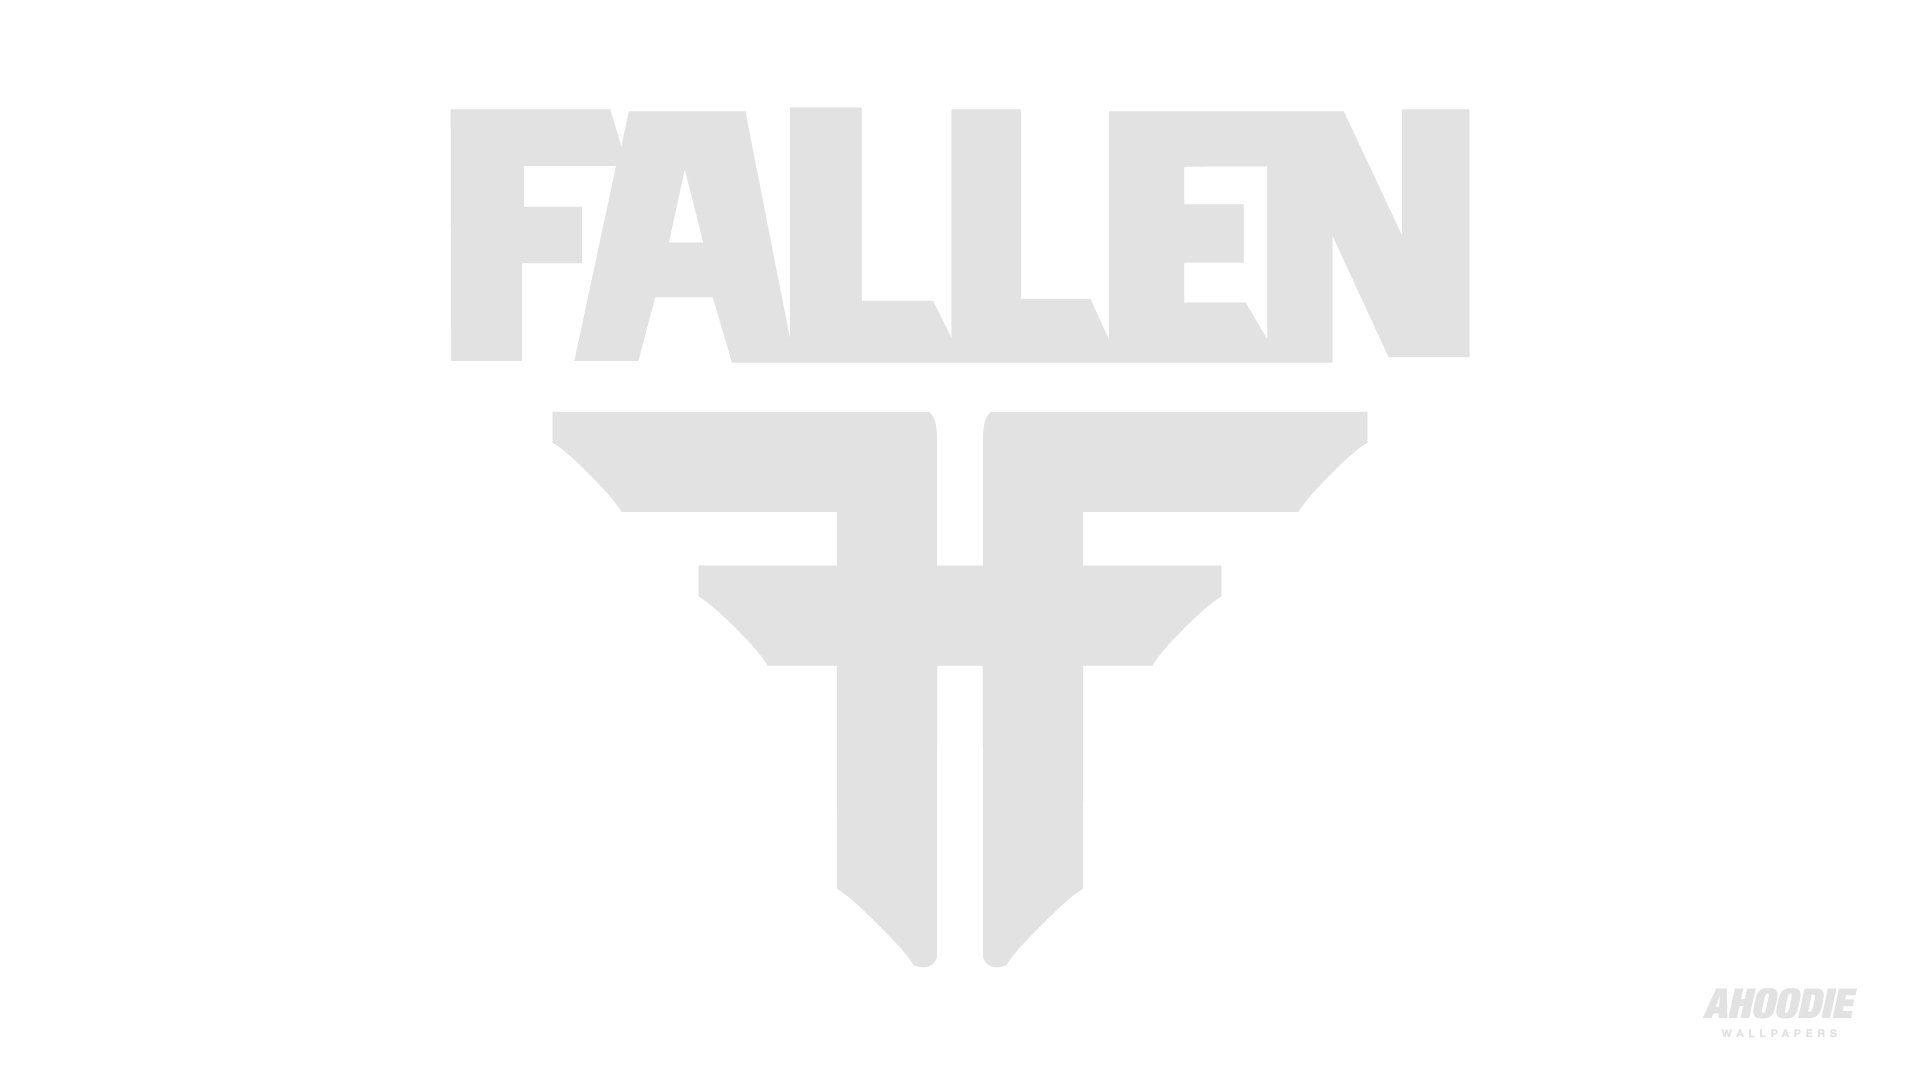 Fallen Footwear Logo